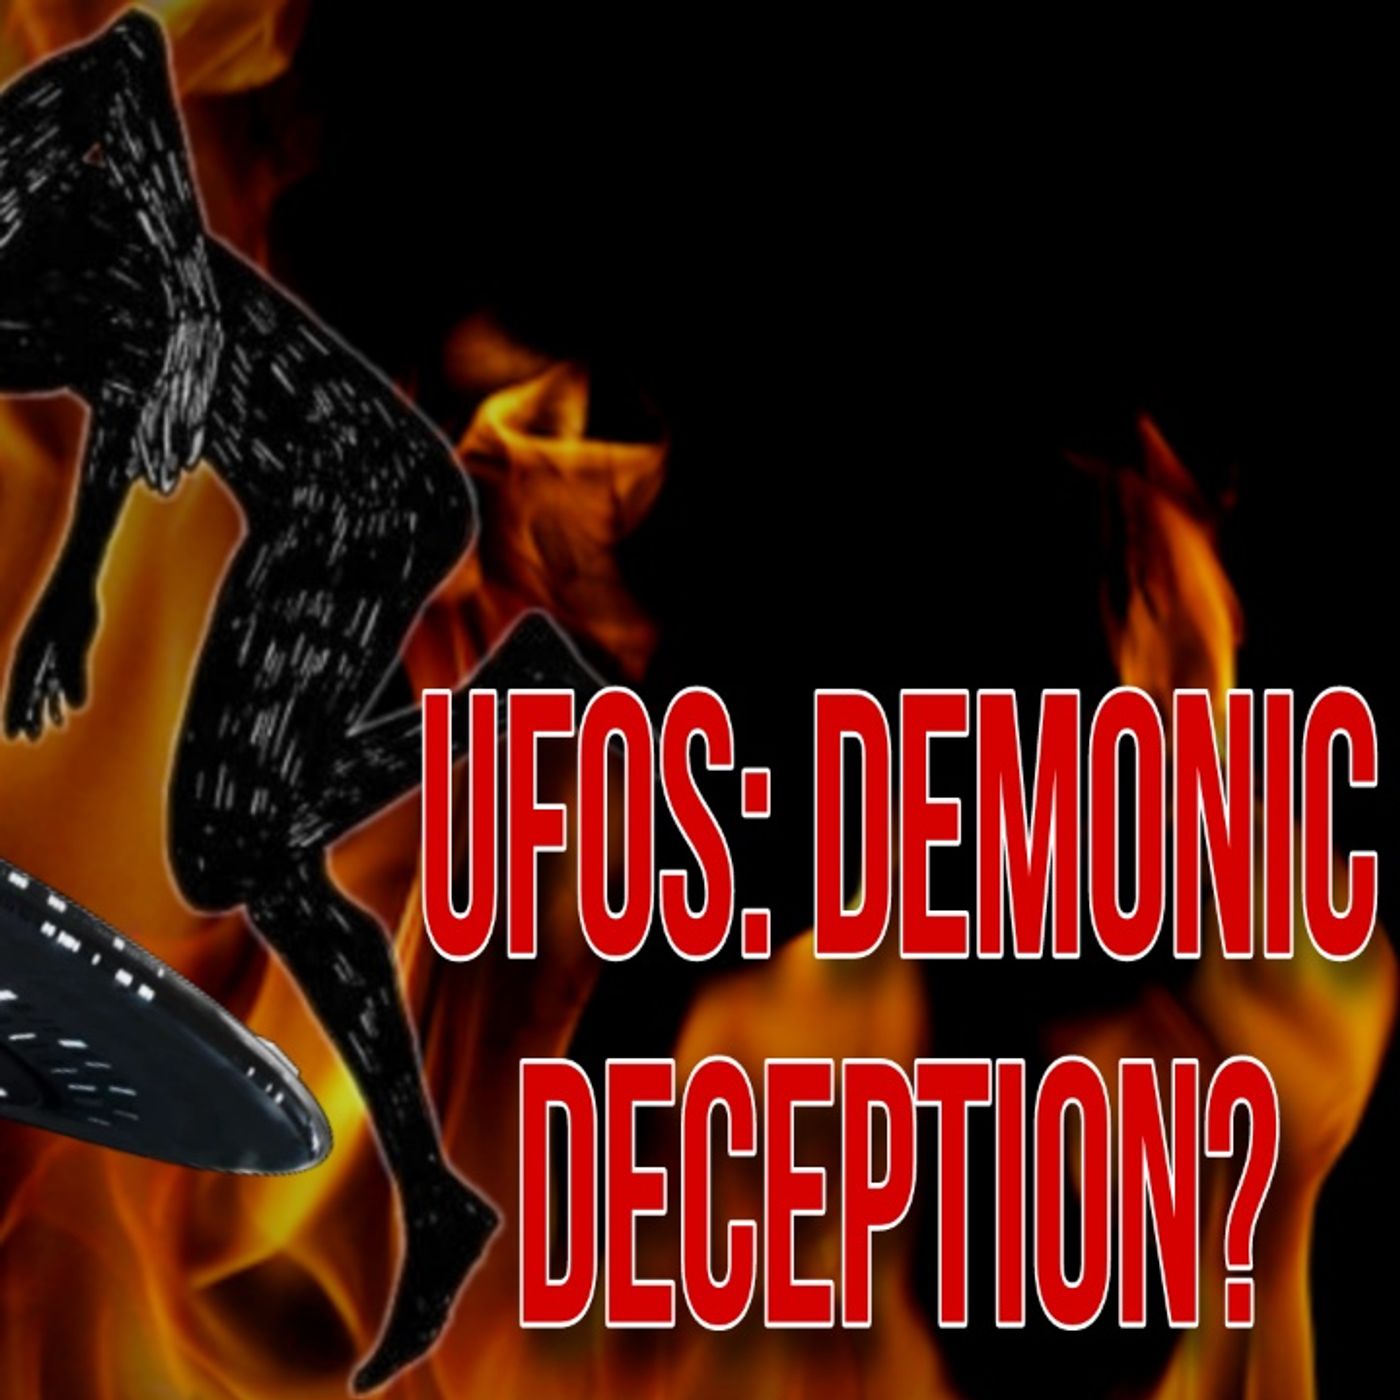 UFOs: Demonic Deception?